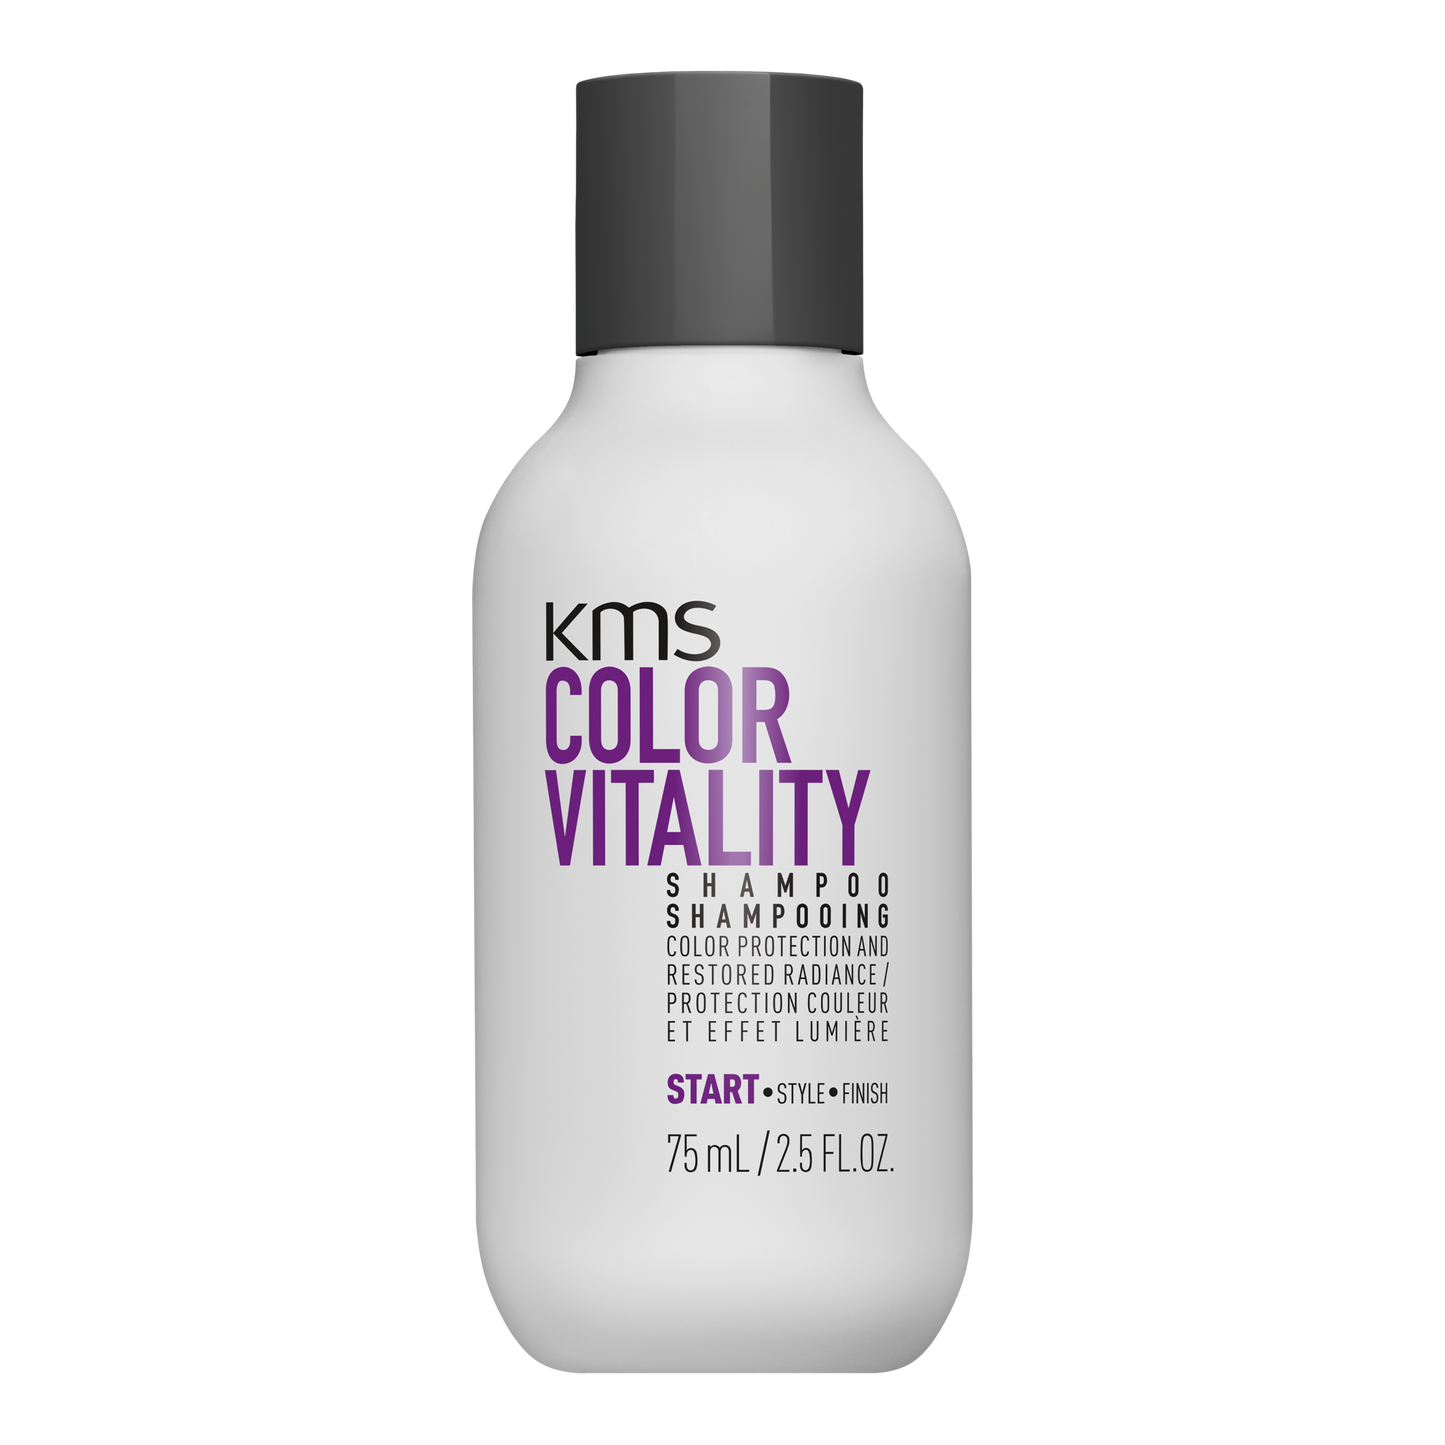 KMS COLORVITALITY Shampoo 75mL